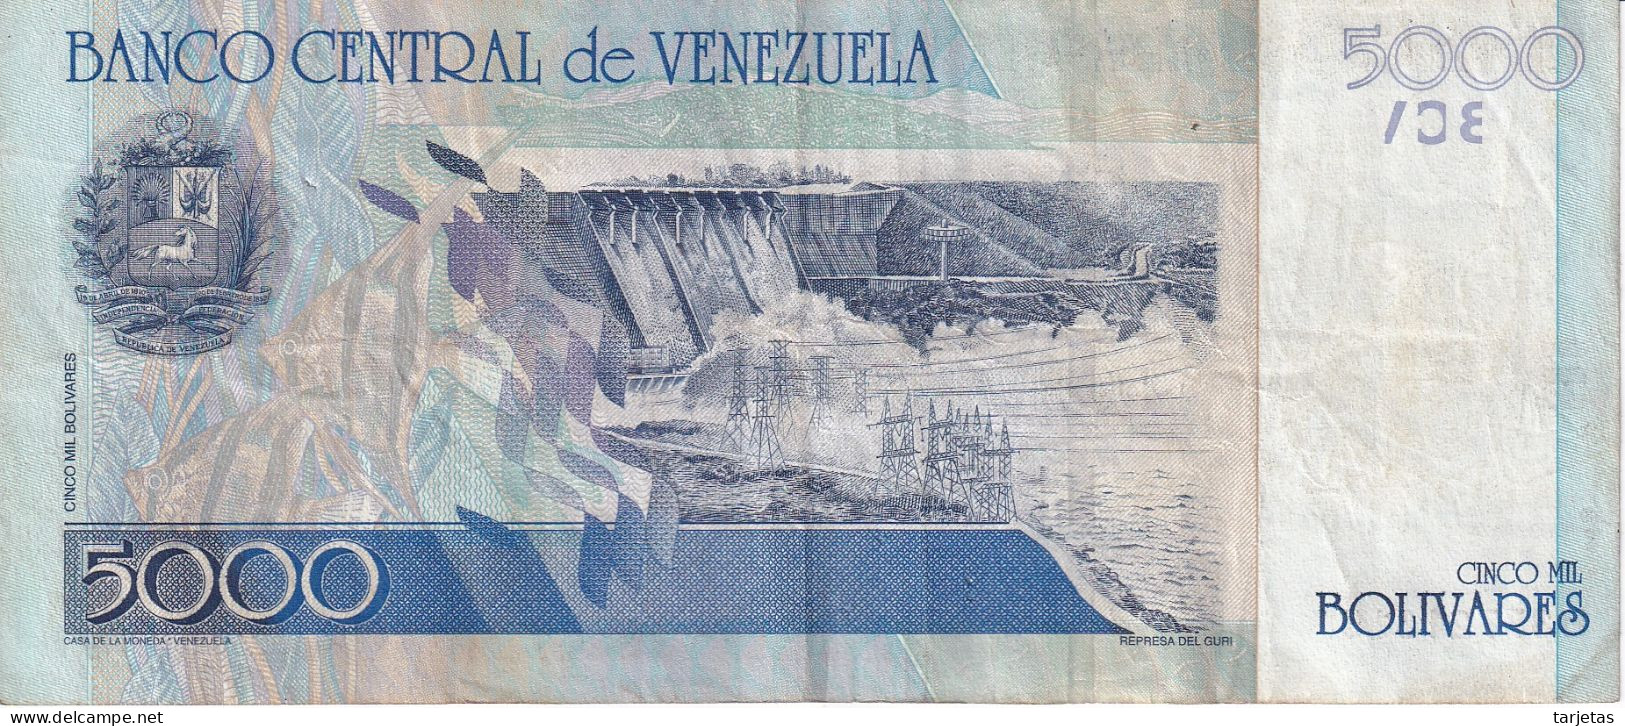 BILLETE DE VENEZUELA DE 5000 BOLIVARES DEL AÑO 2002  (BANKNOTE) - Venezuela